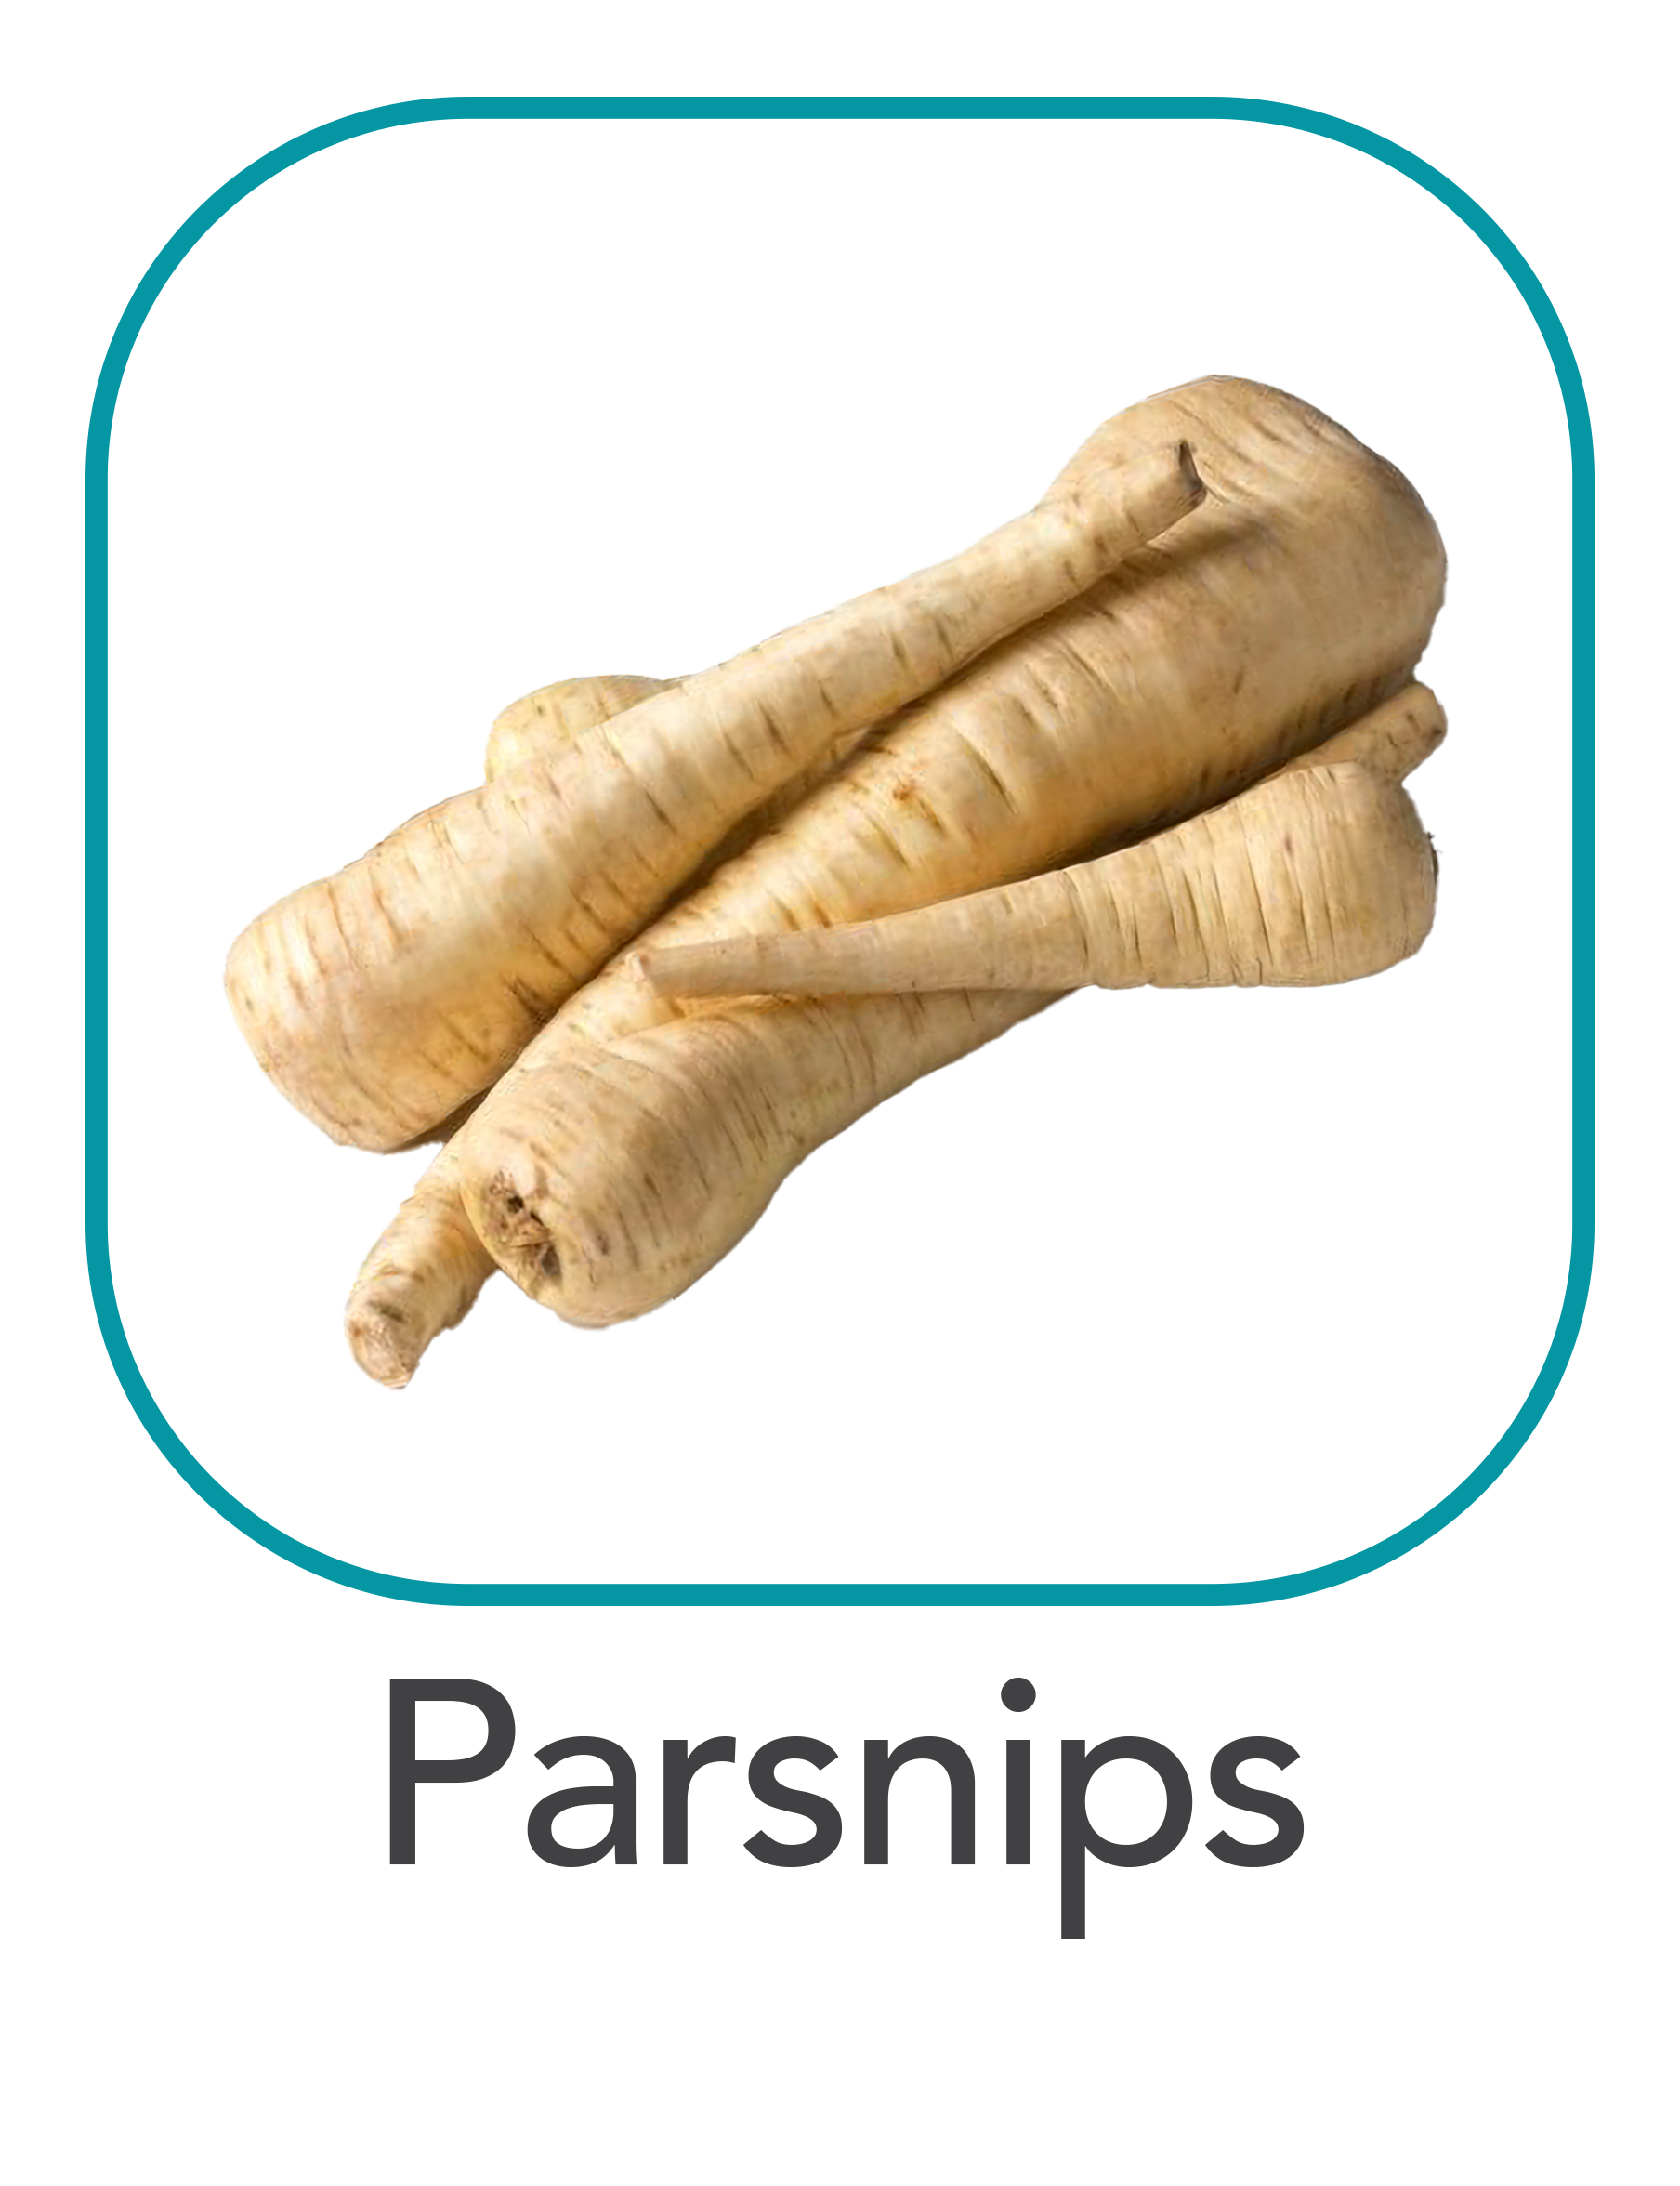 parsnips_web.png